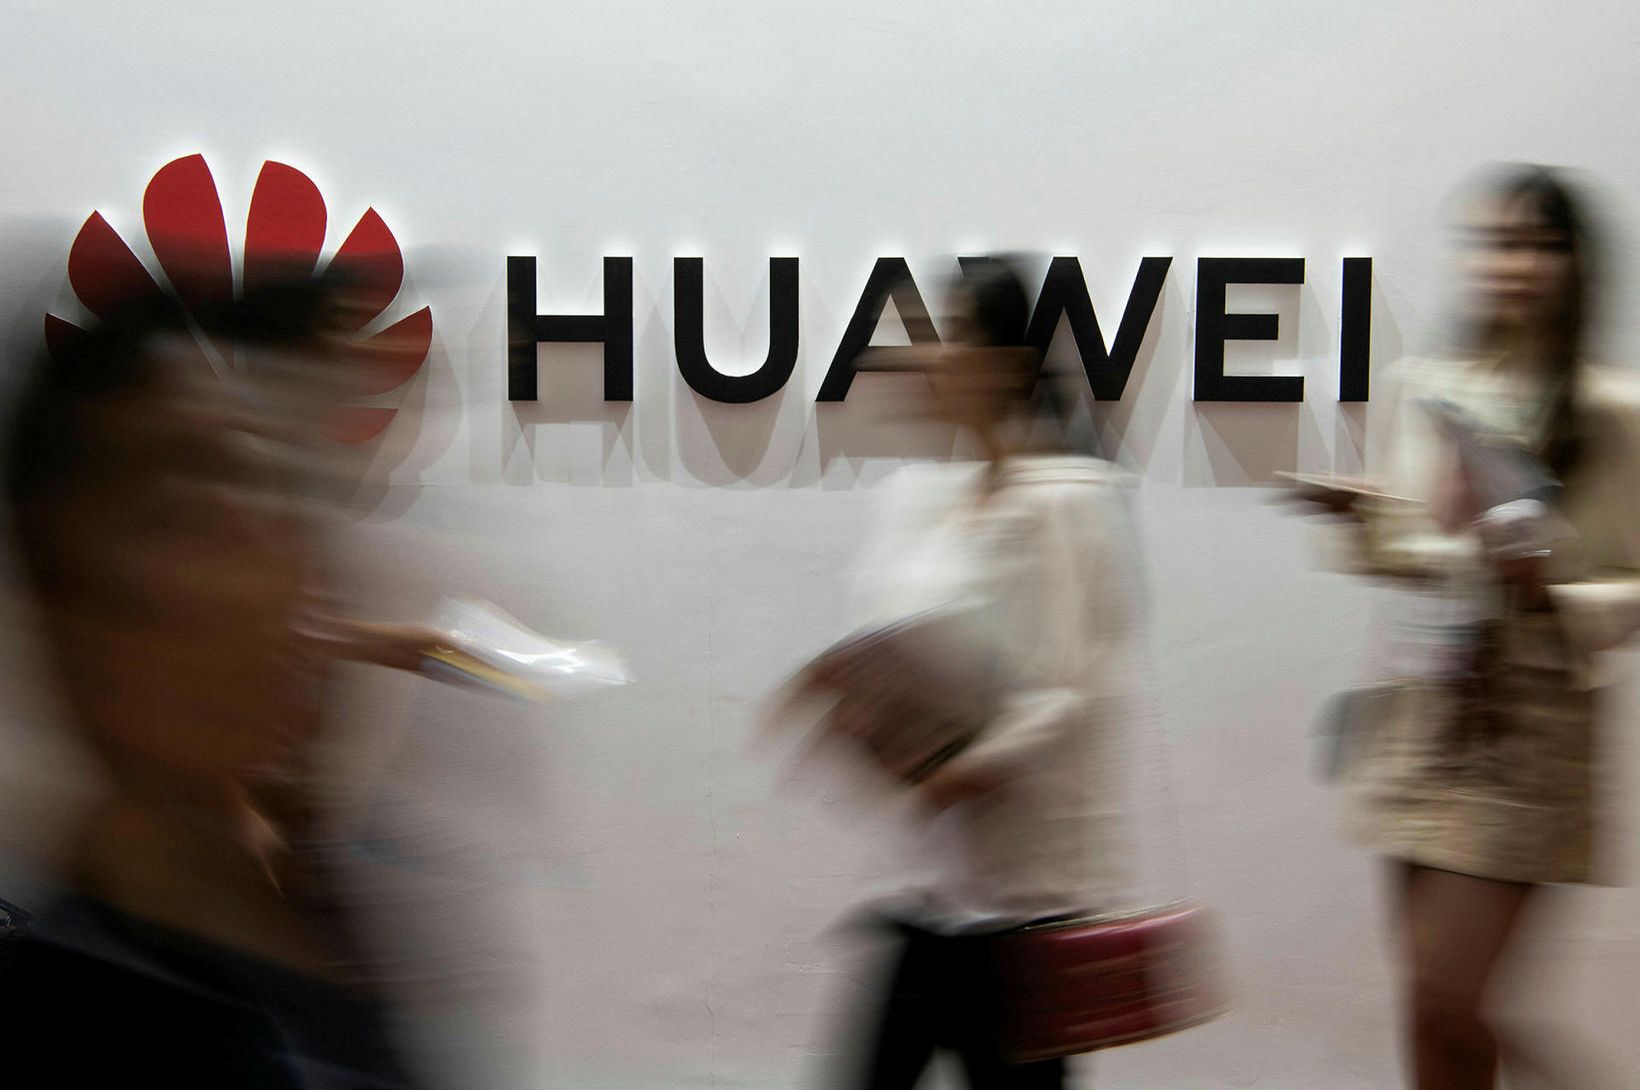 Huawei tapaði bandarísku dómsmáli 